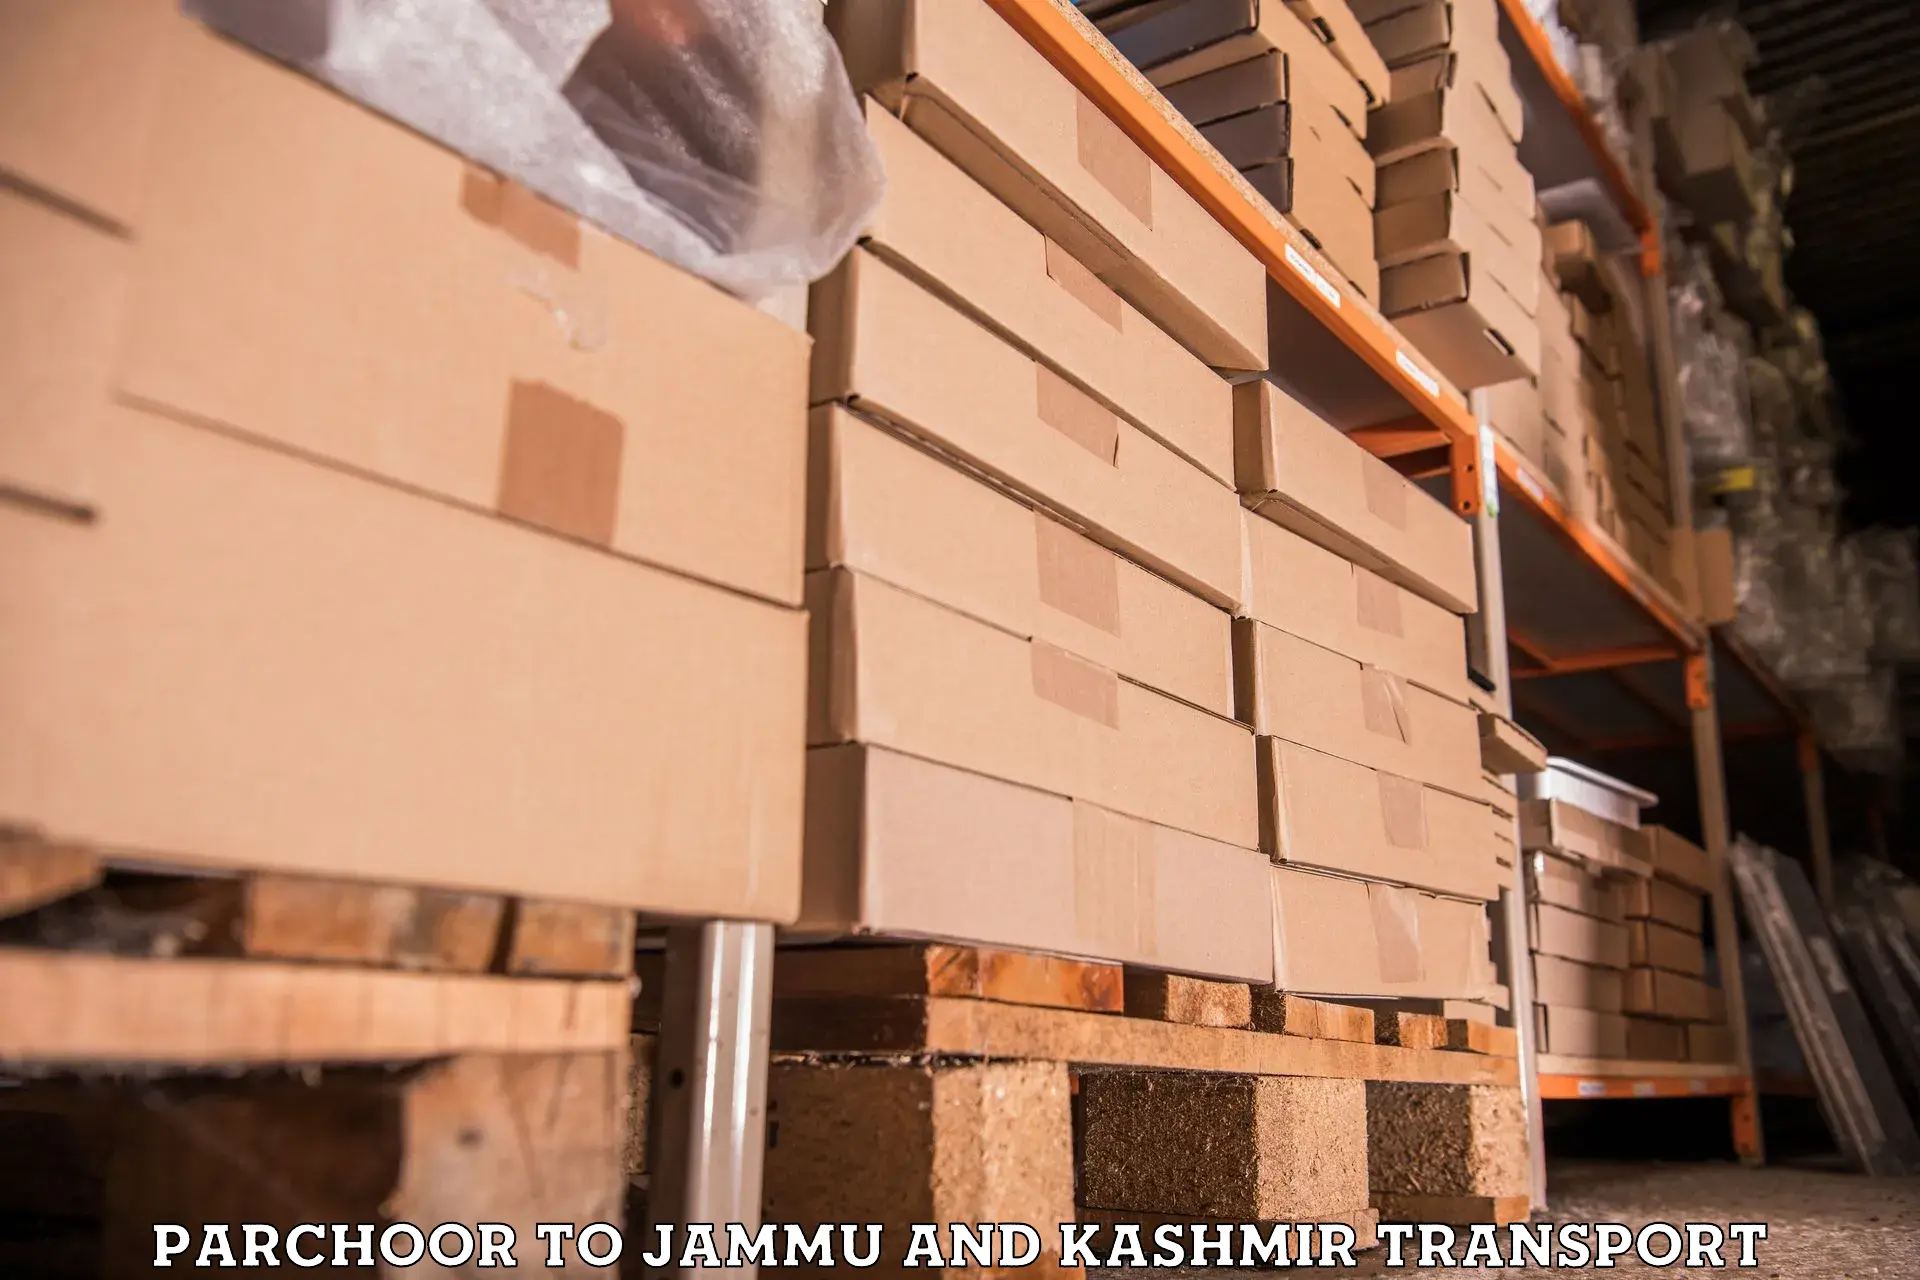 Lorry transport service Parchoor to IIT Jammu